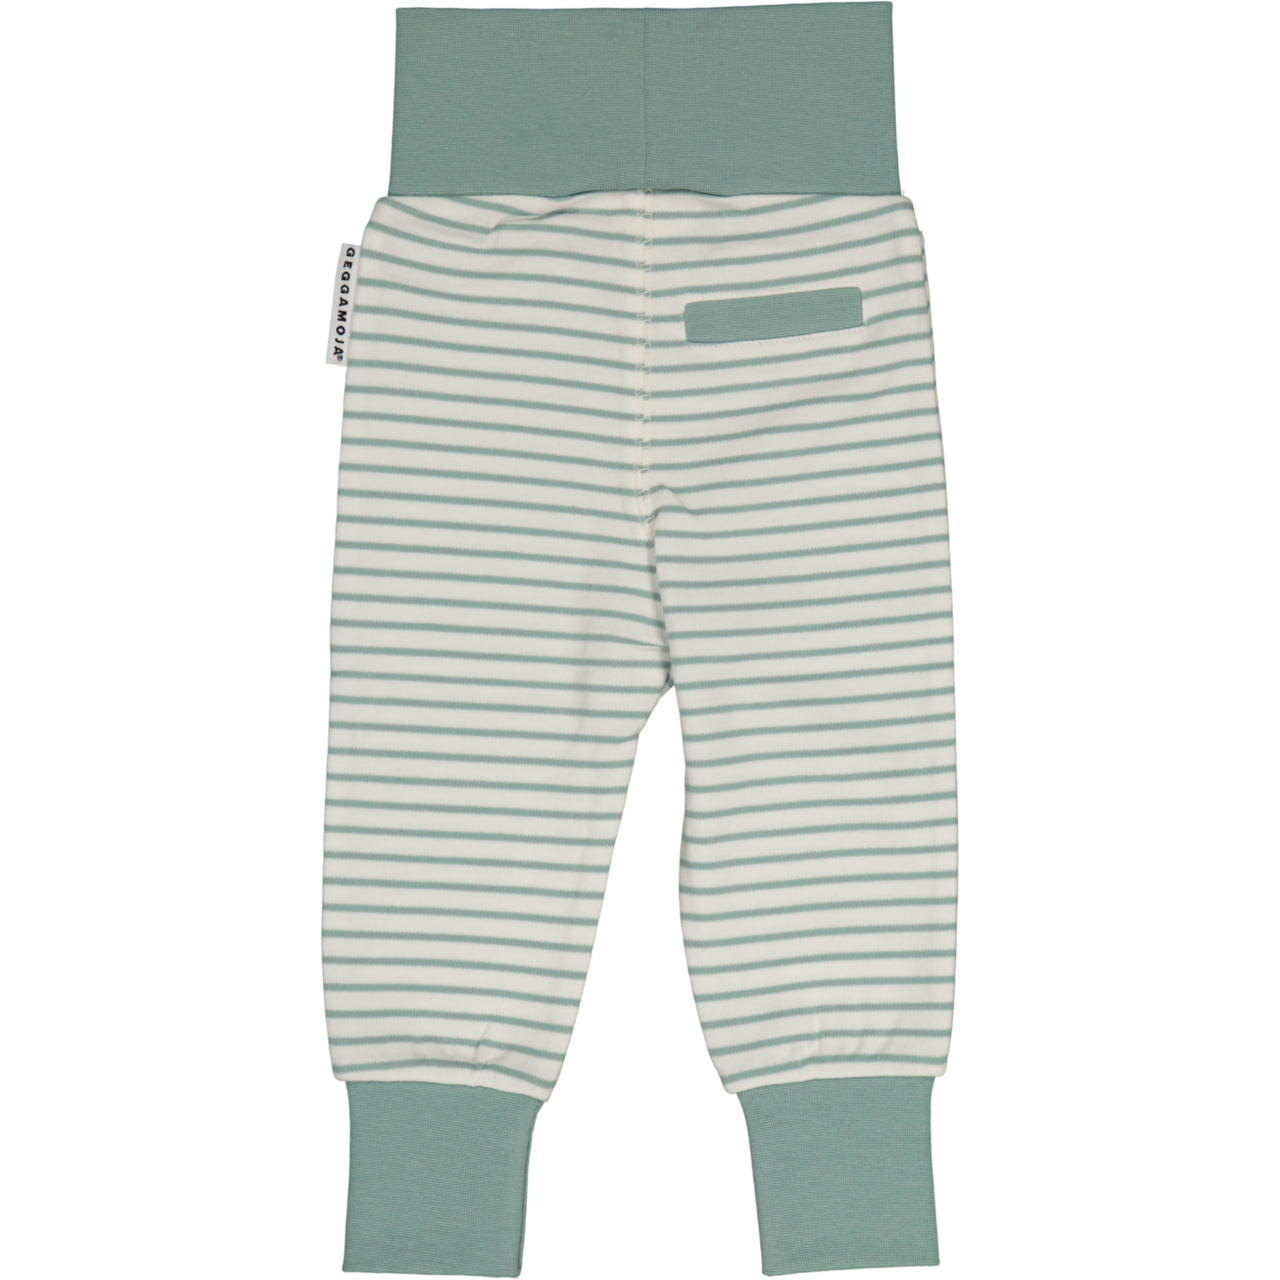 Vauvan housut L.vihreä/offvalkoinen 74/80